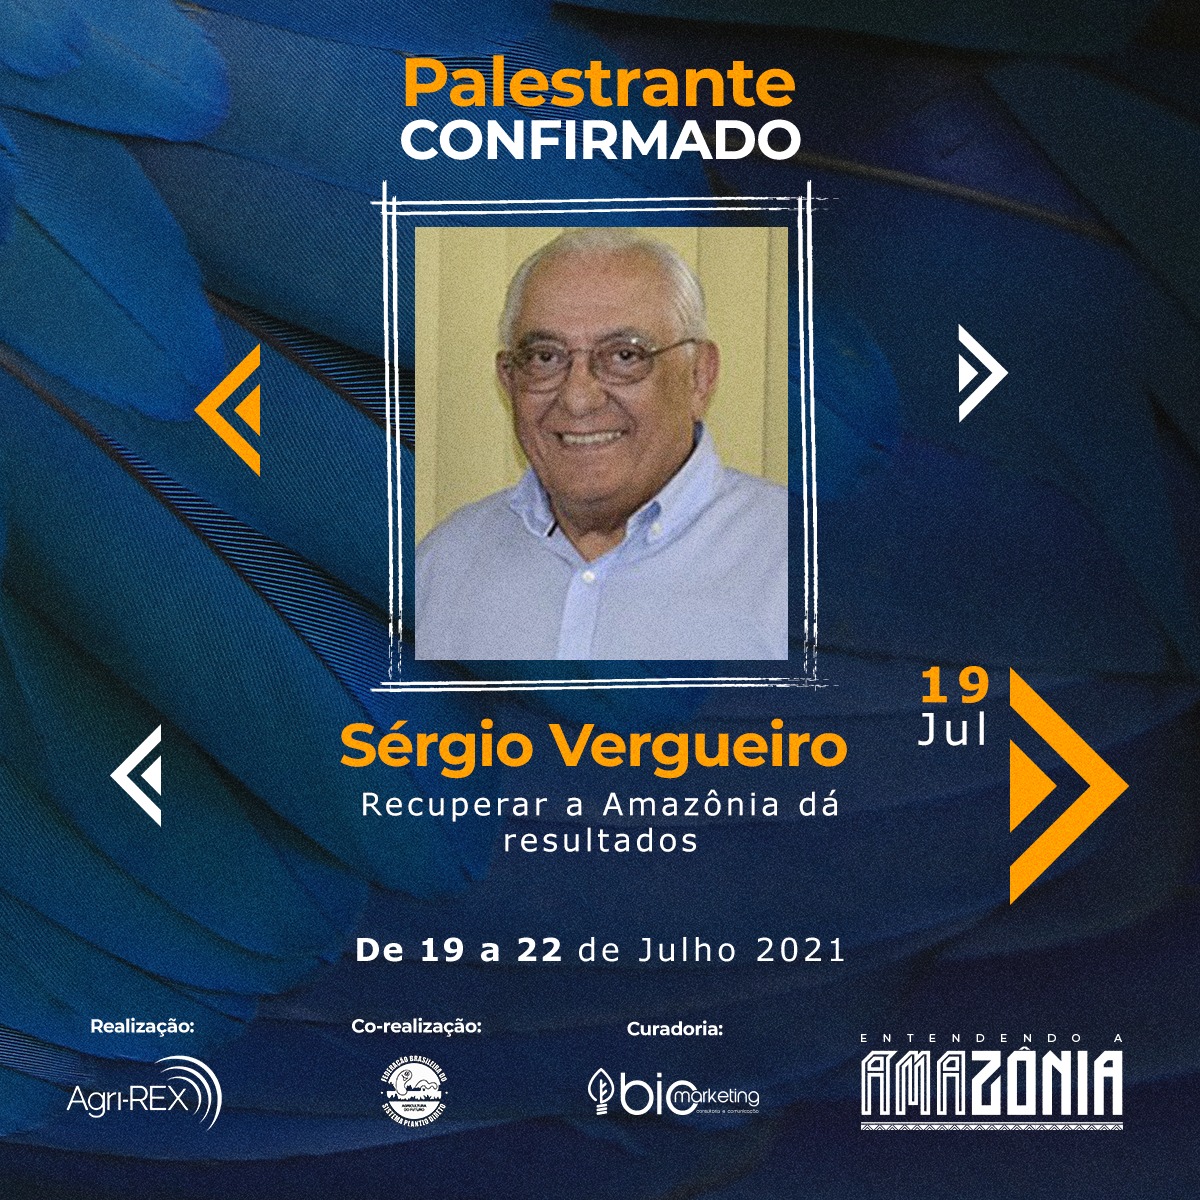 Sérgio Vergueiro: Evento sobre a Amazônia, no dia 19/07, às 11h15